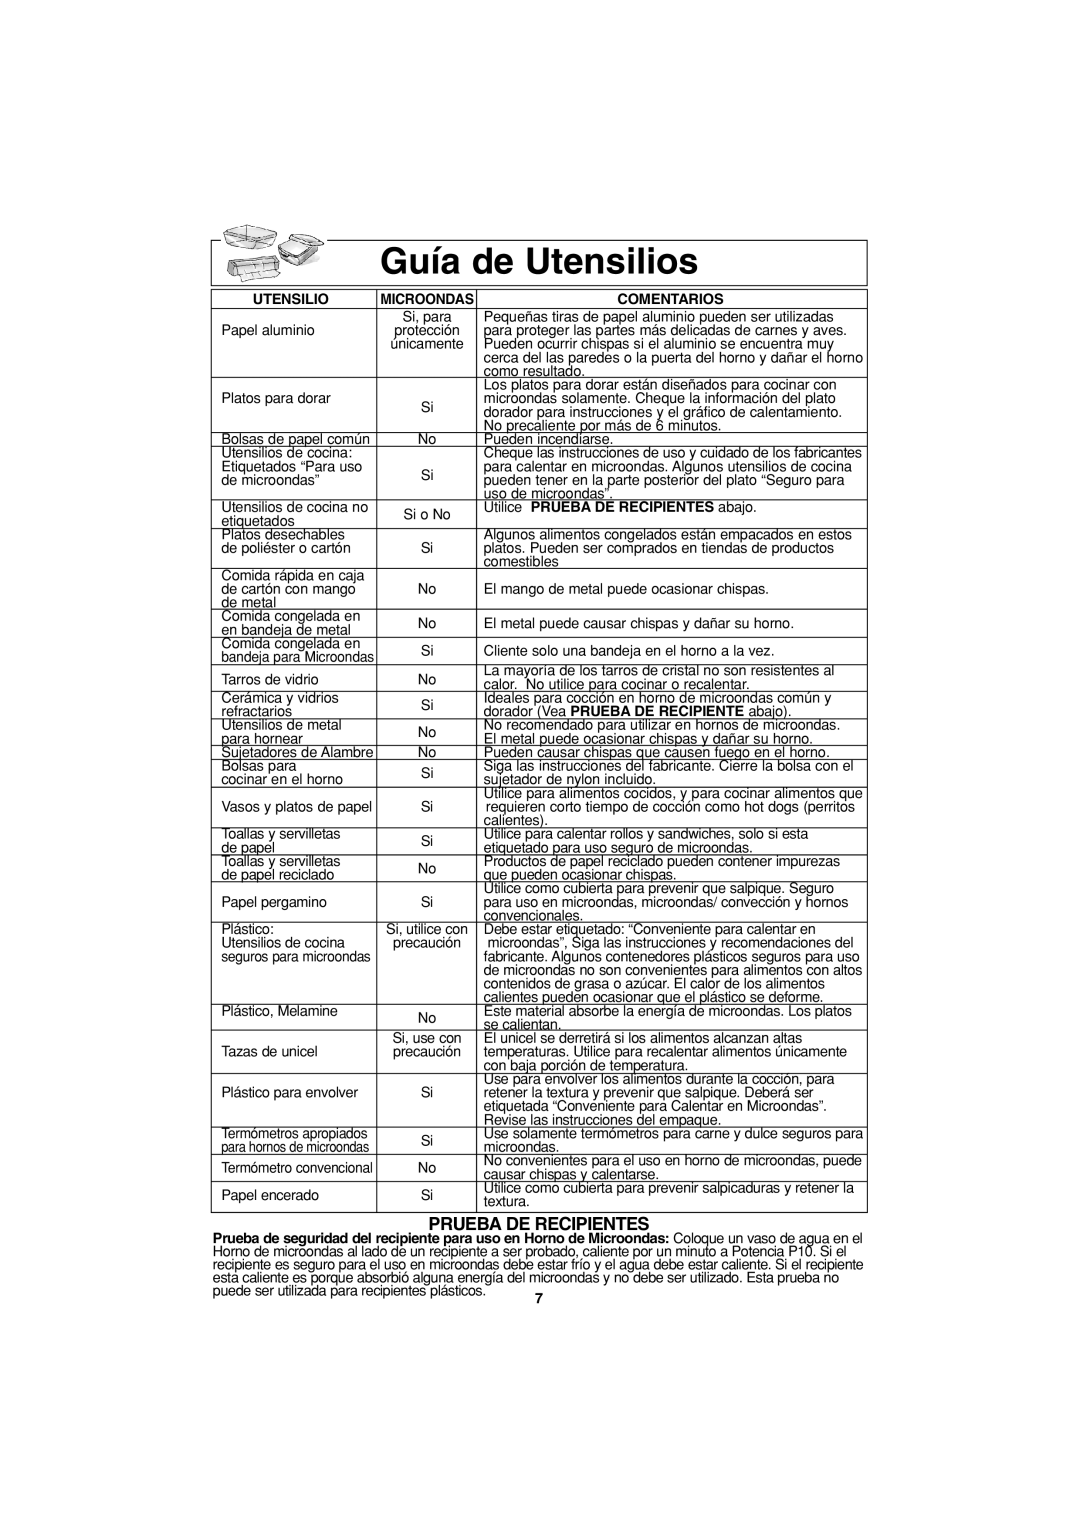 Panasonic NN-S443 important safety instructions Guía de Utensilios, Comentarios, Utilice PRUEBA DE RECIPIENTES abajo 